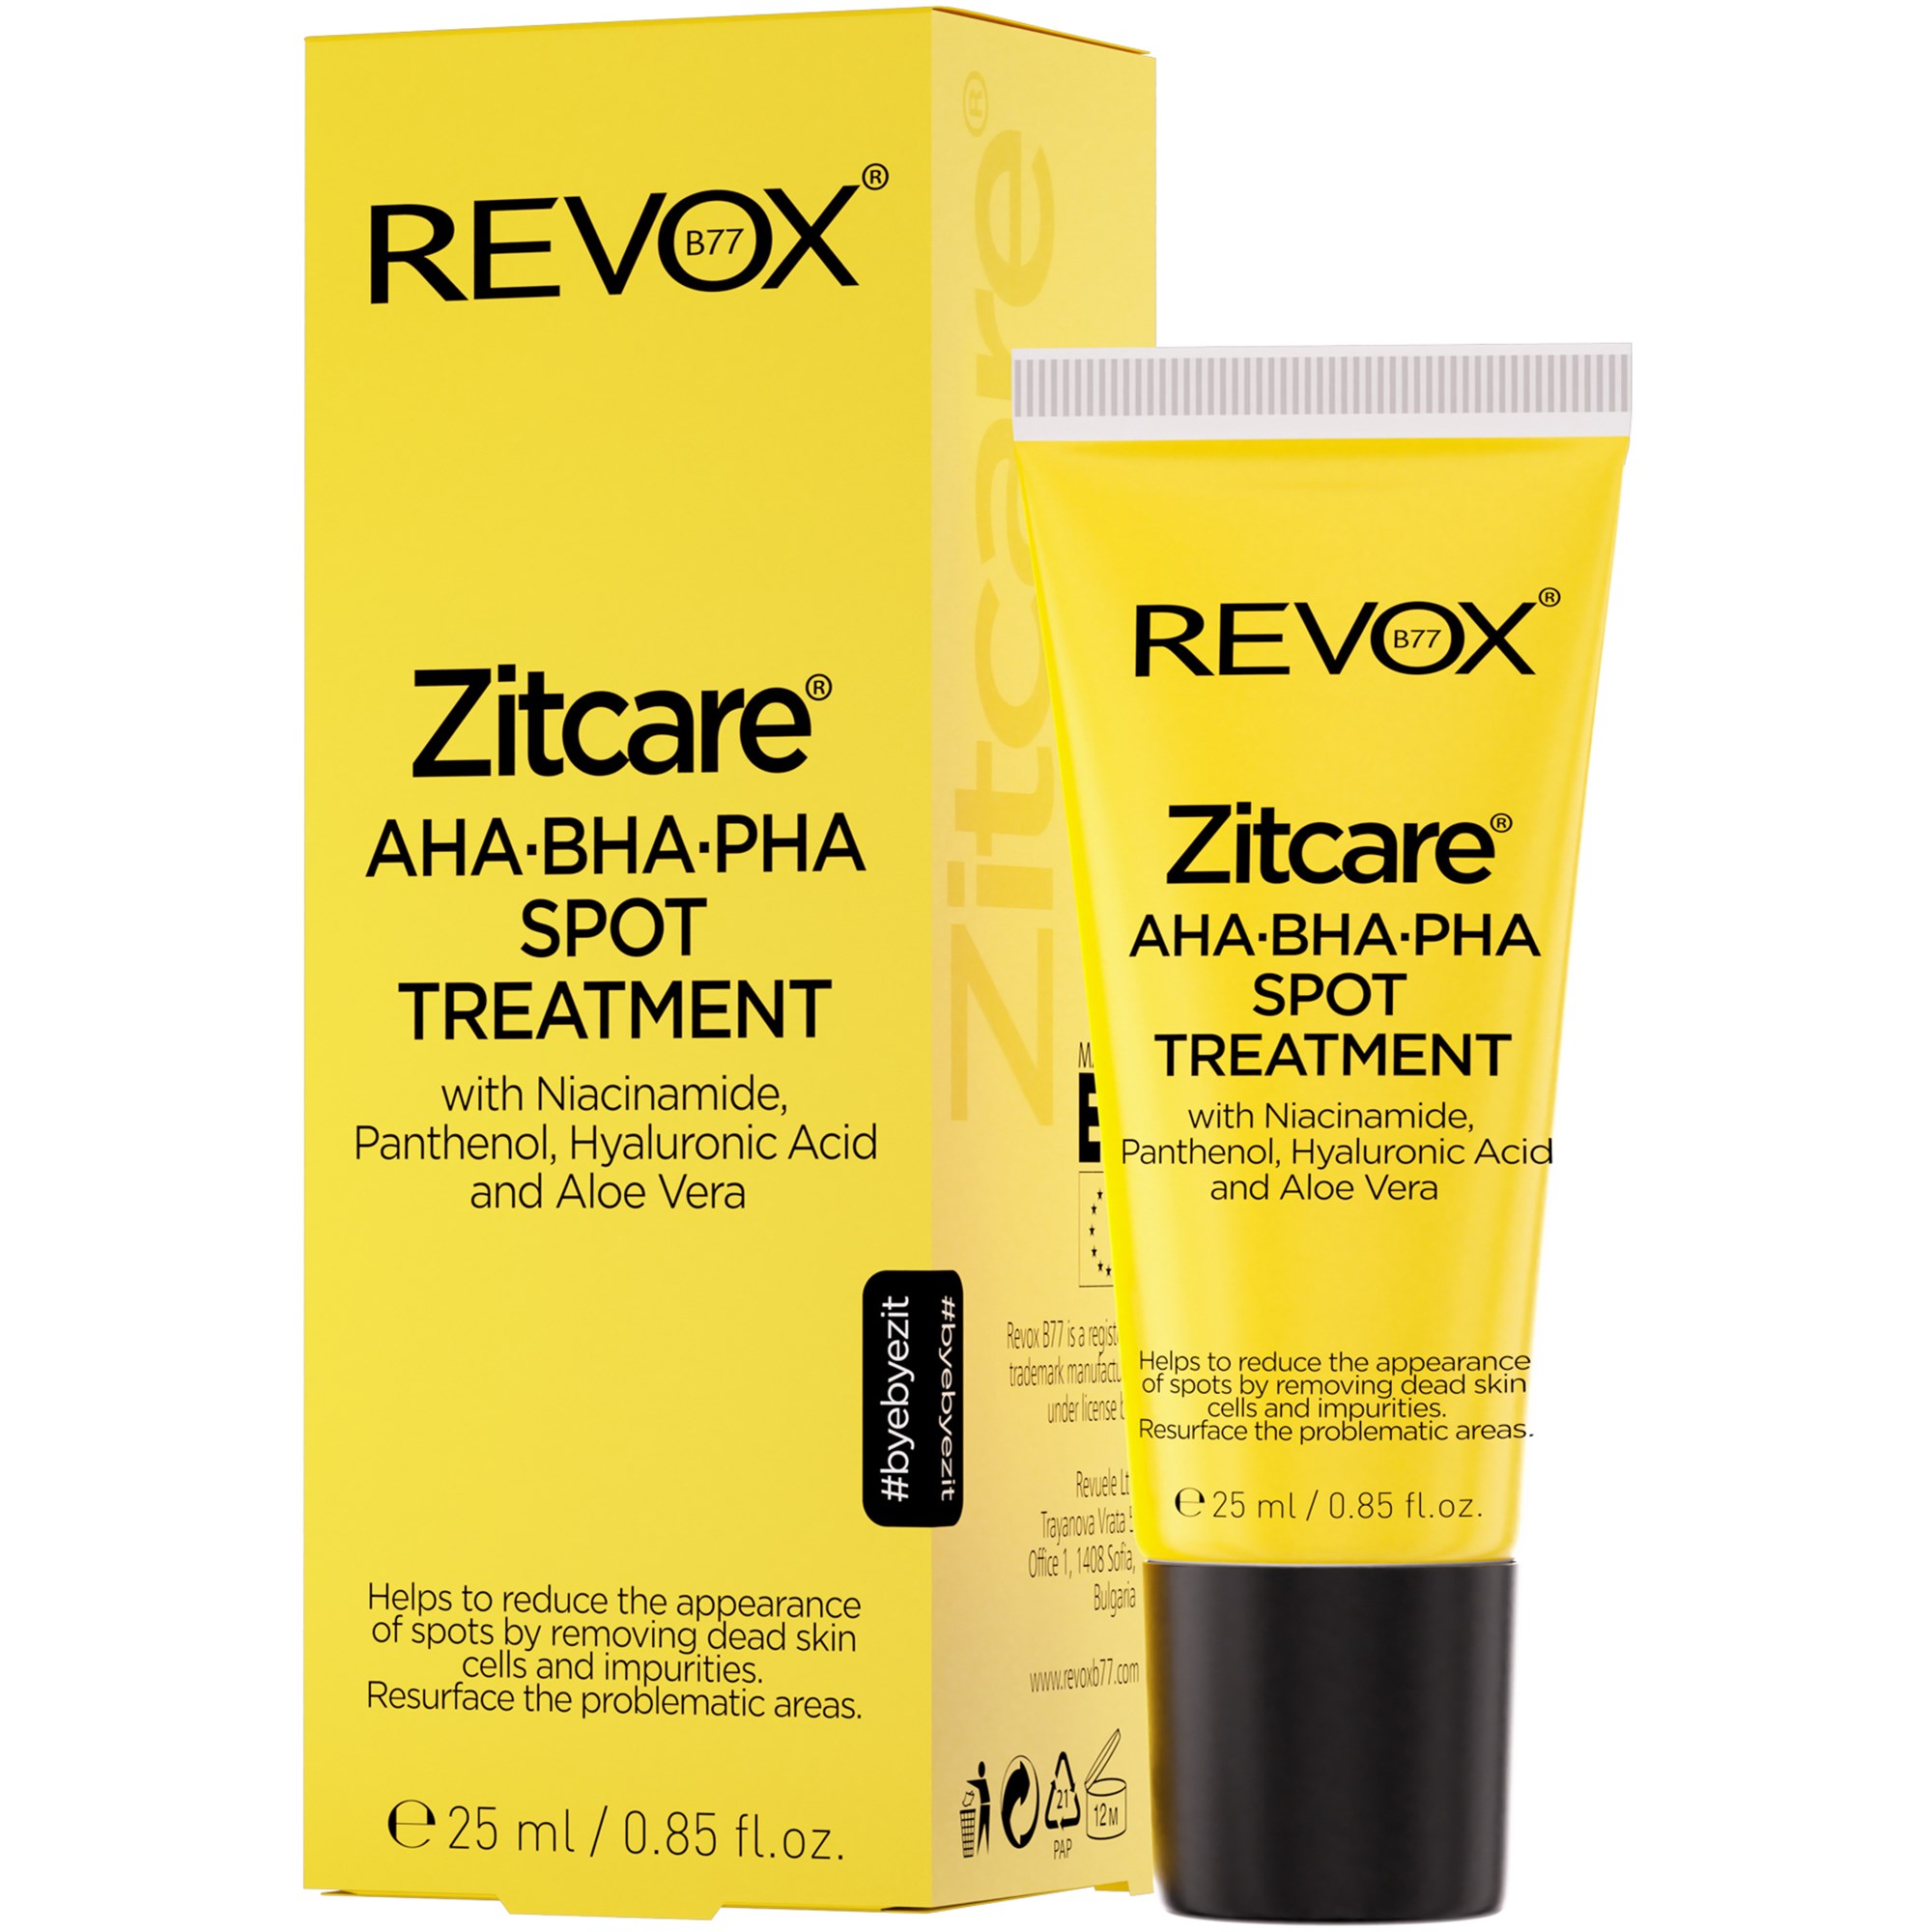 Revox Zitcare® REVOX B77 AHA.BHA.PHA. Spot Treatment 25 ml